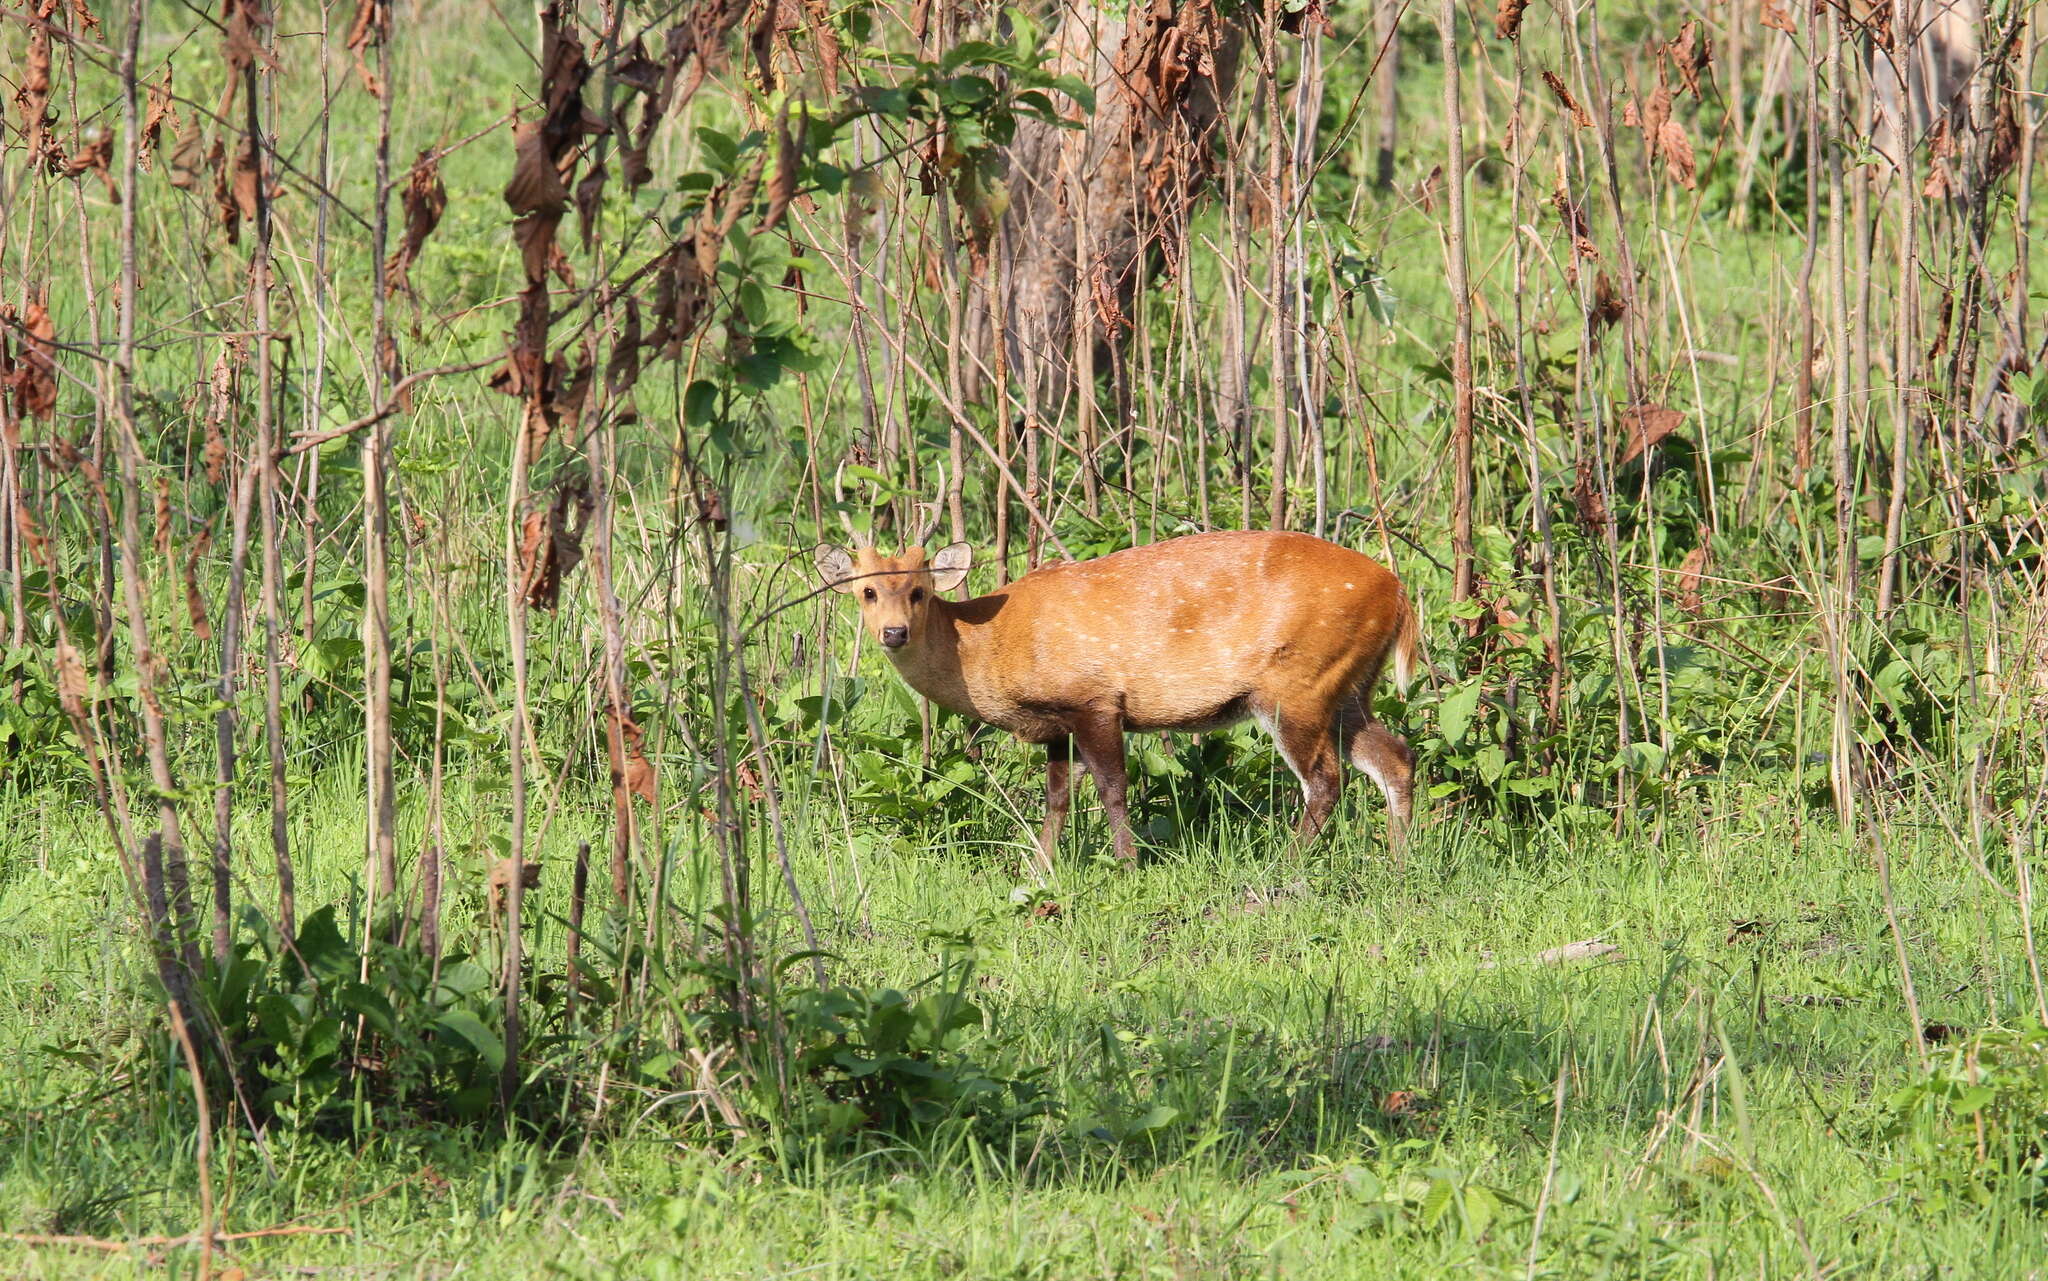 Image of Hog Deer